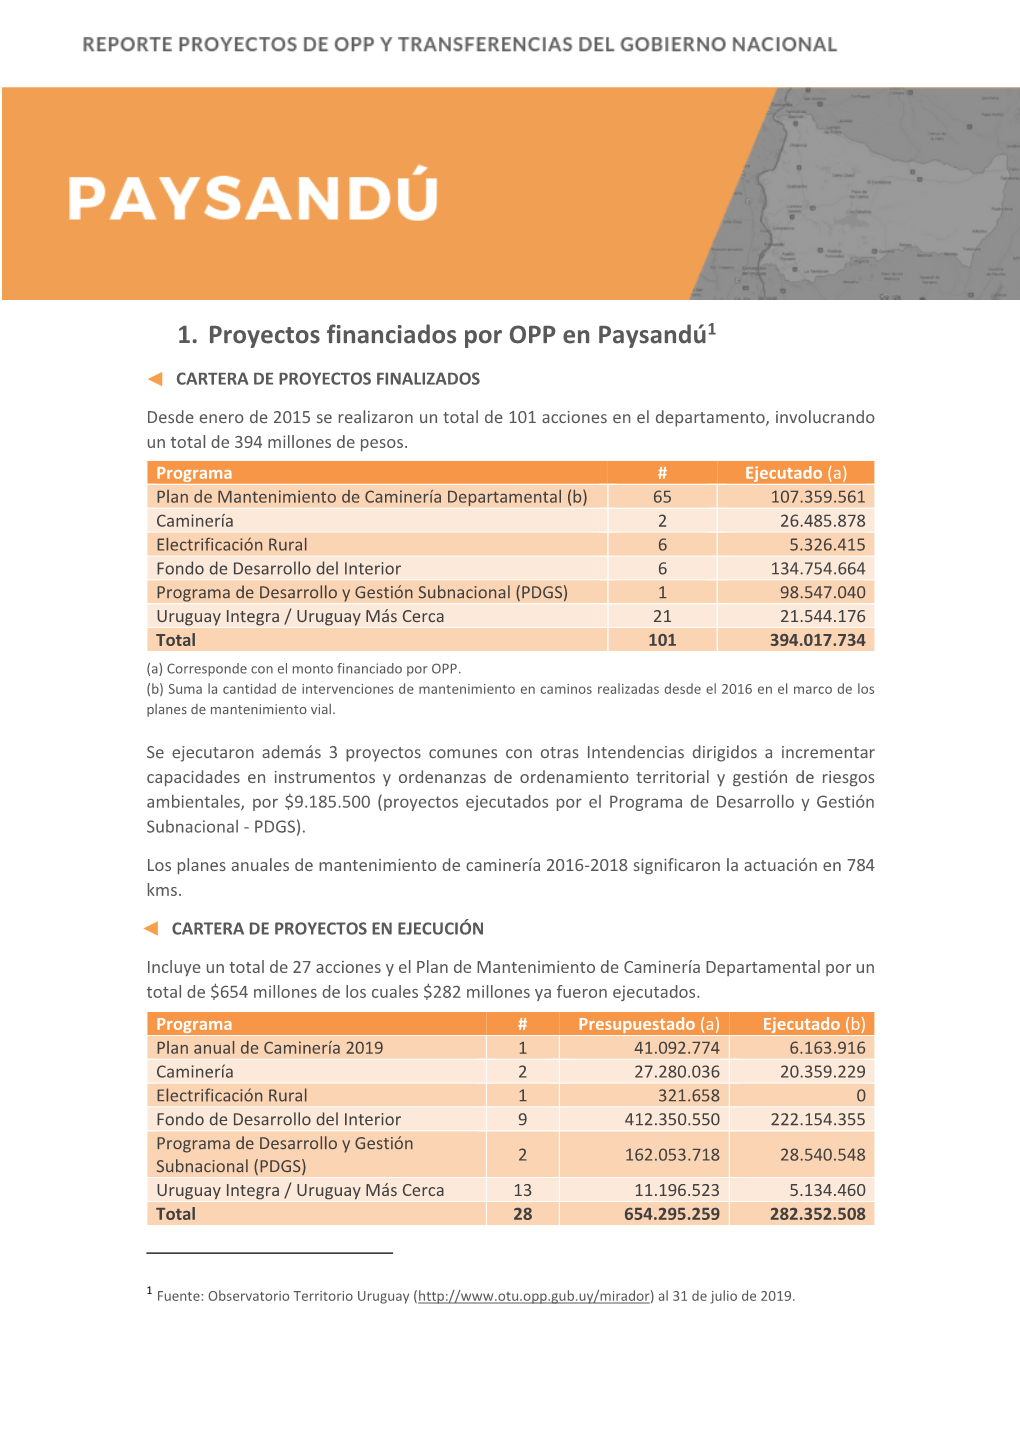 1. Proyectos Financiados Por OPP En Paysandú1